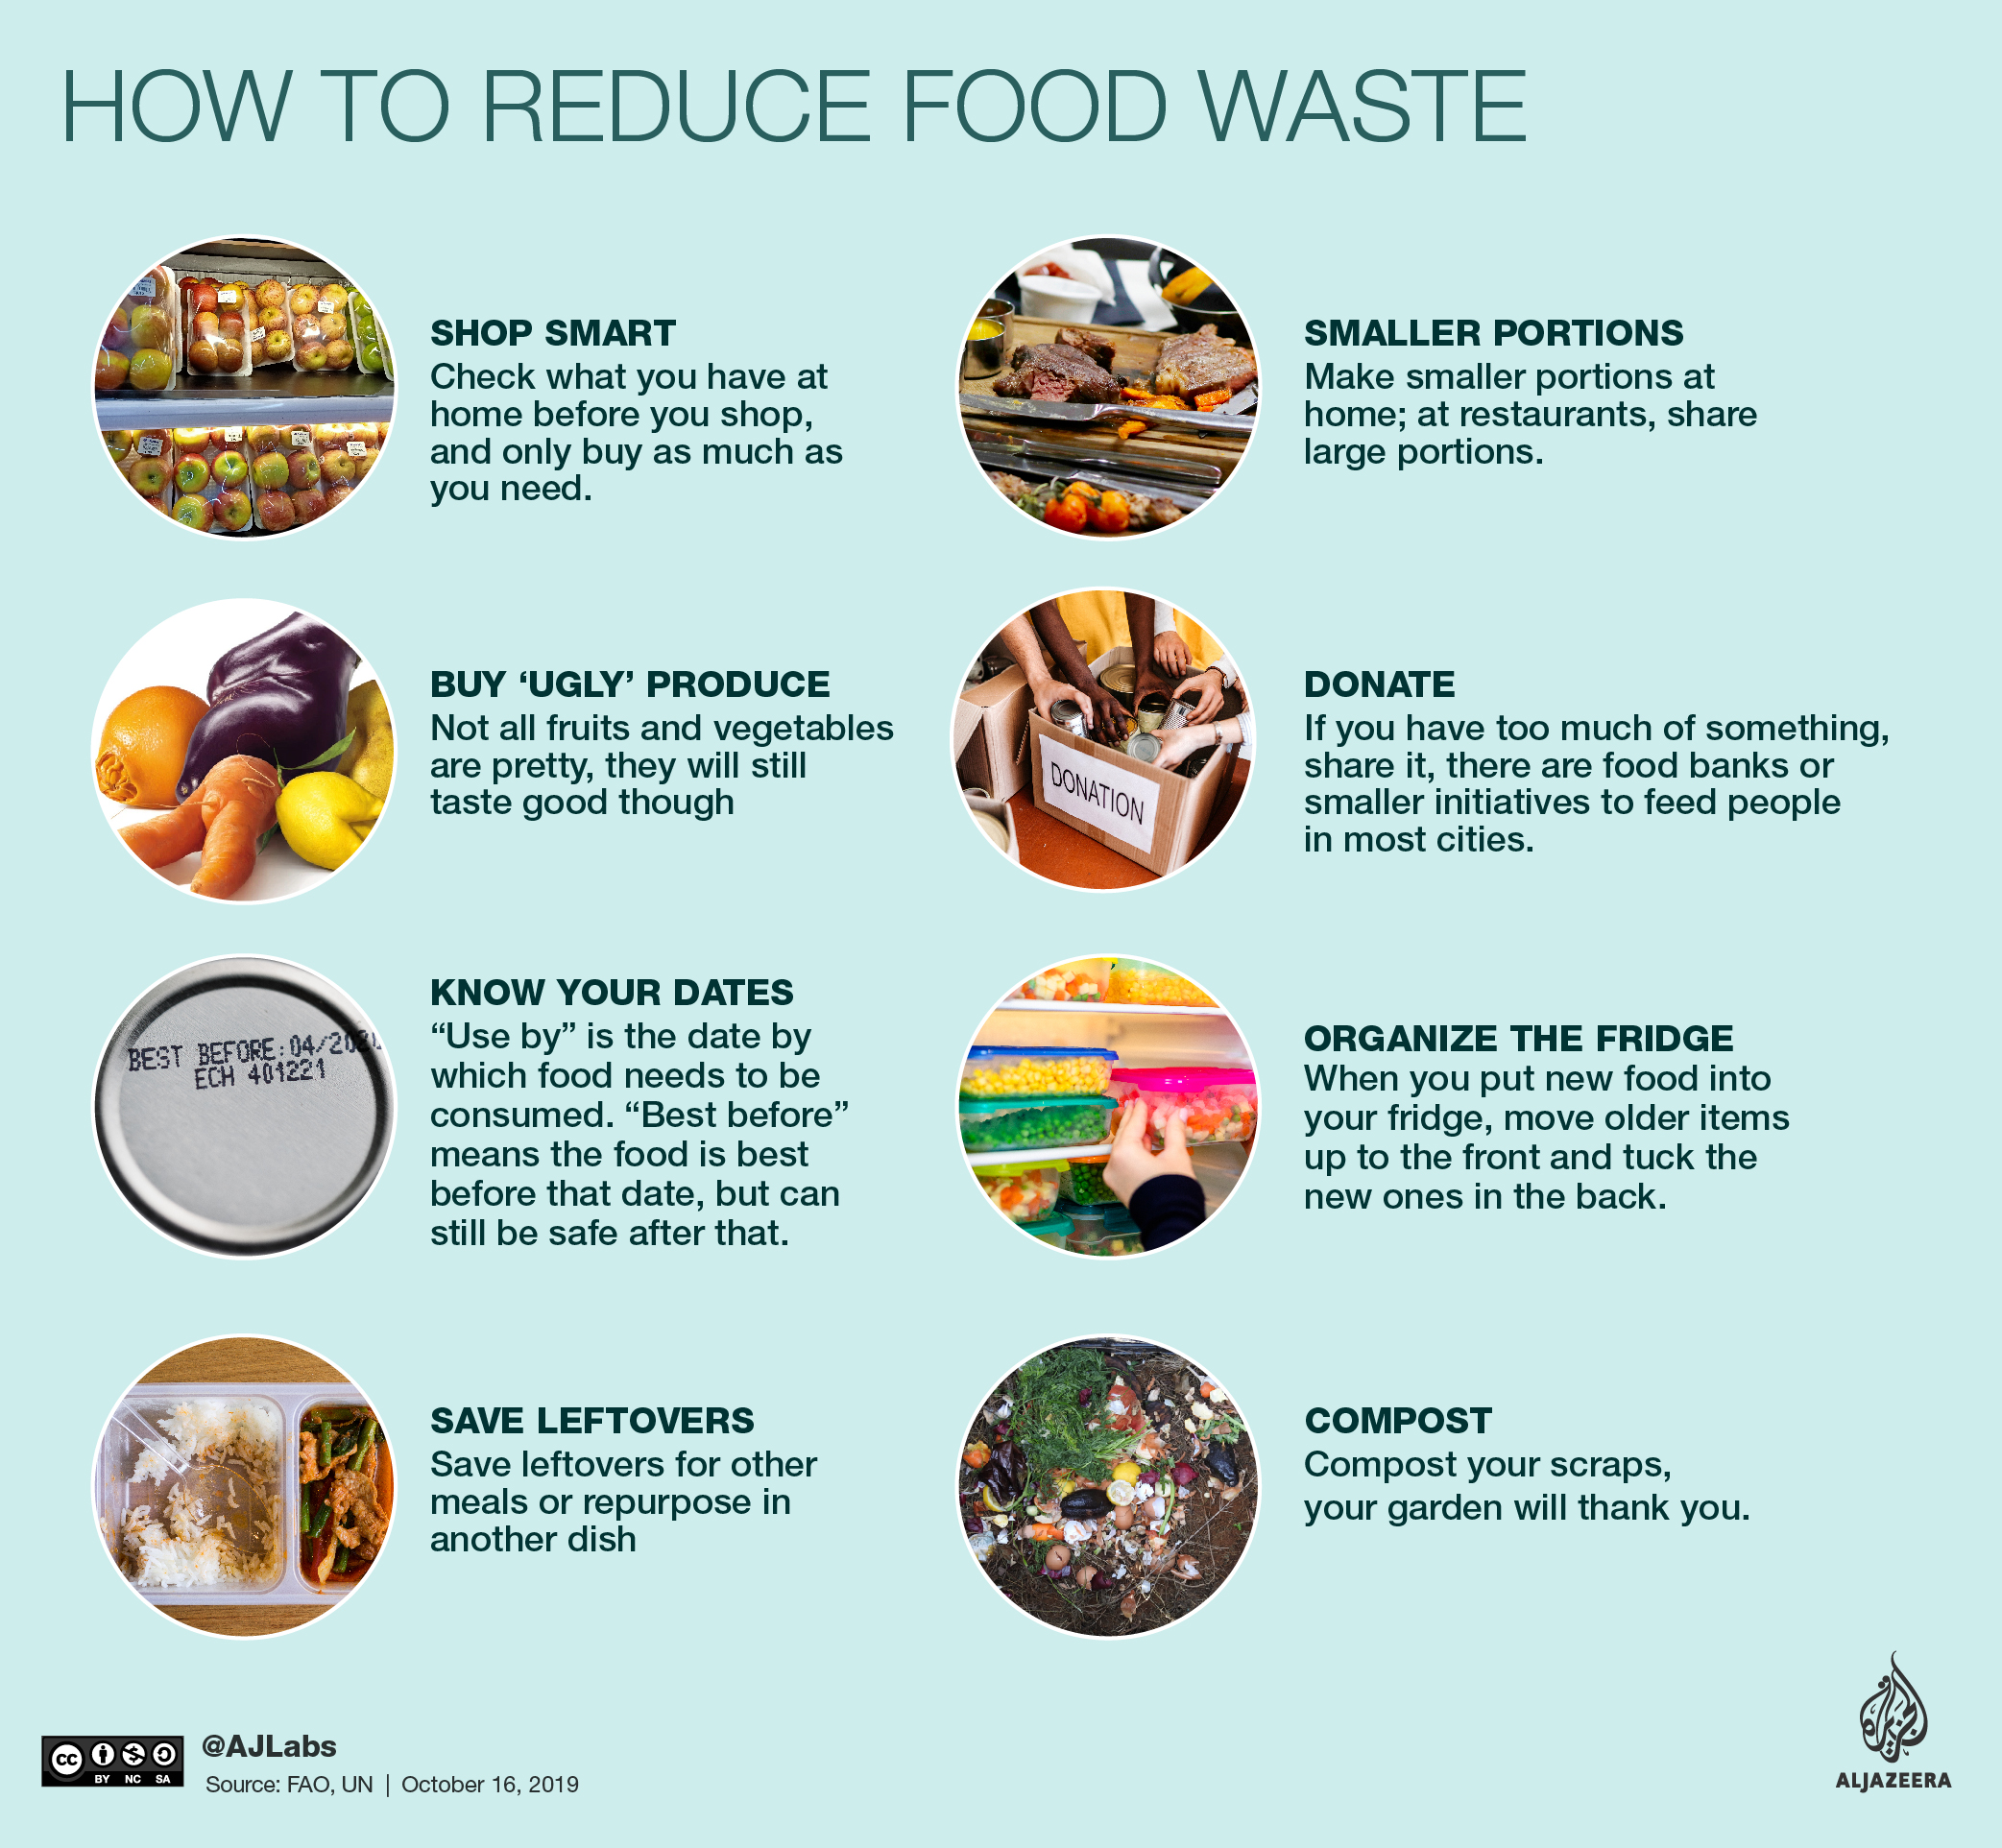 World Food Day: The fight against food waste | Food News | Al Jazeera